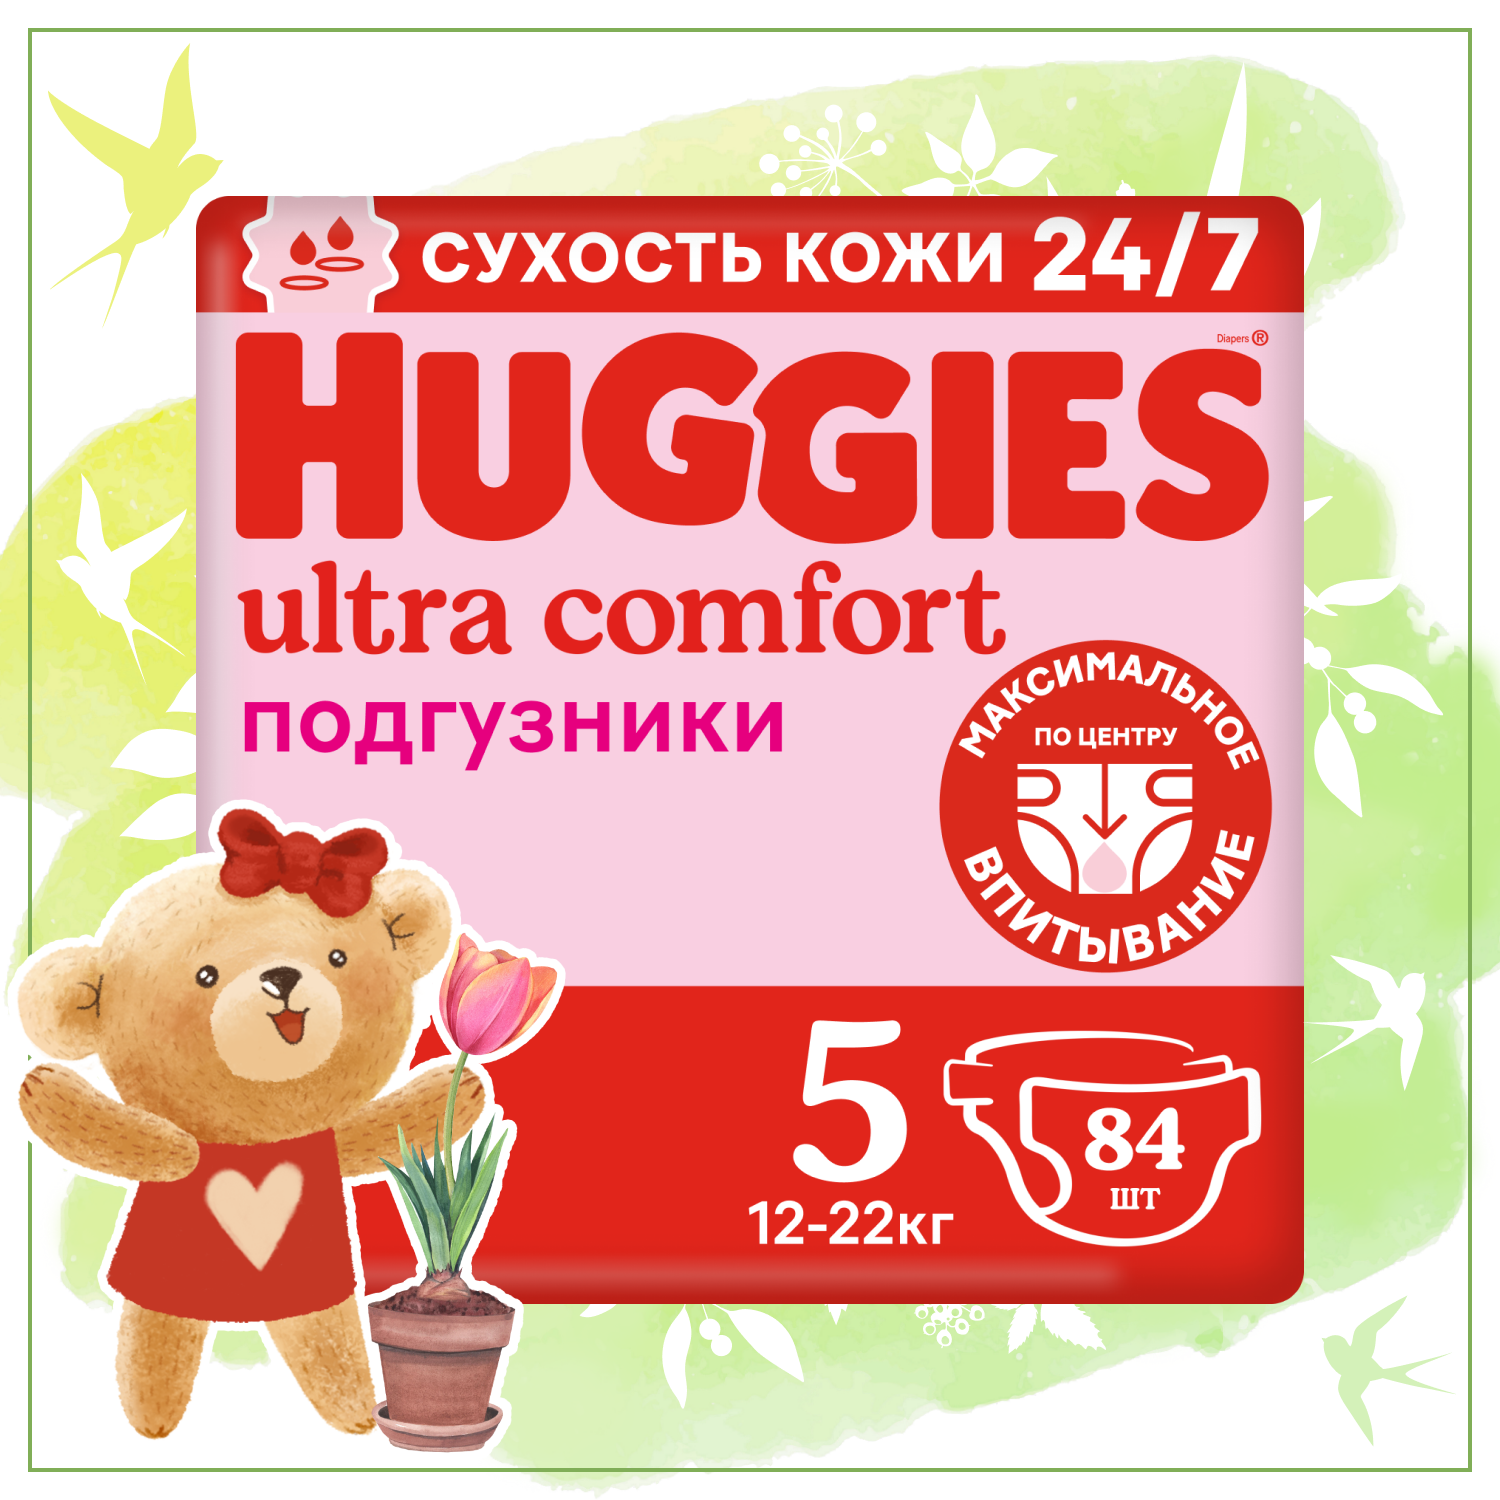 Подгузники Huggies Ultra Comfort для девочек 5 12-22кг 84шт - фото 1